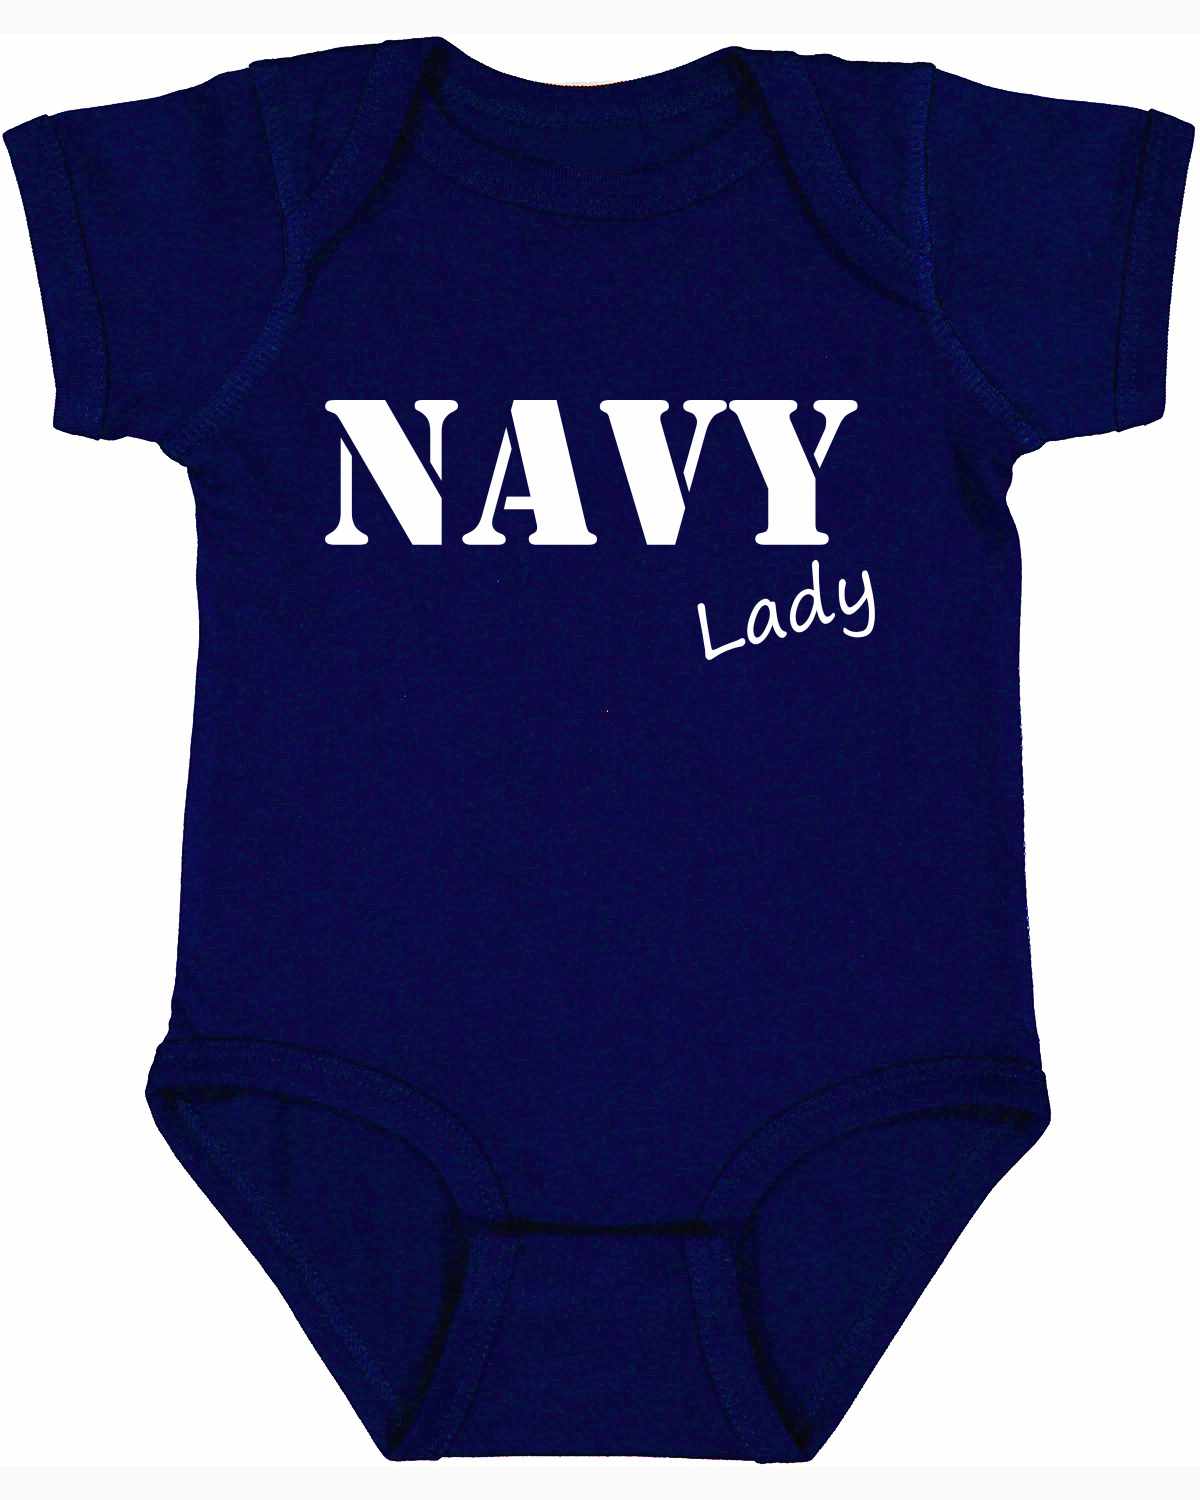 NAVY Lady Infant BodySuit